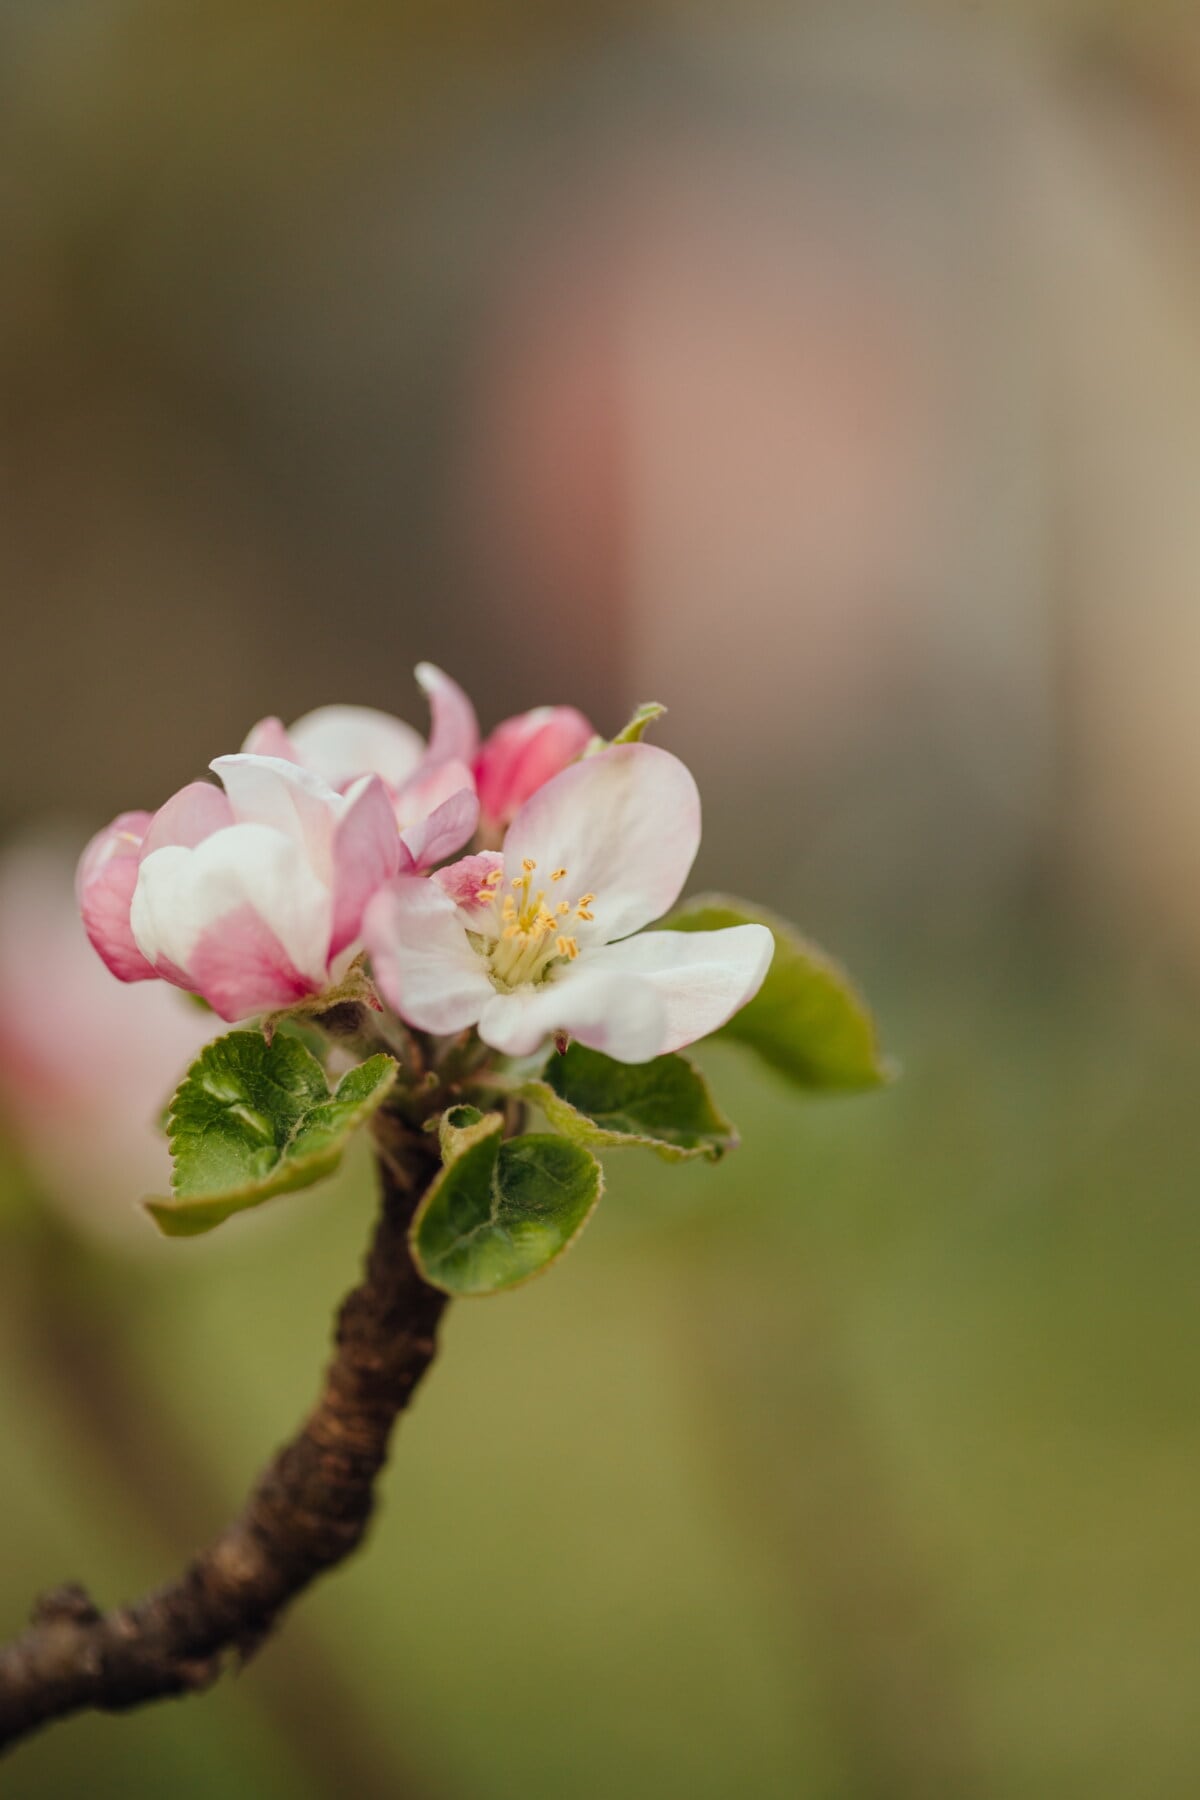 appelboom, stuifmeel, witte bloem, lentetijd, dichtbij, stamper, bloemblad, vervagen, appel, bloem